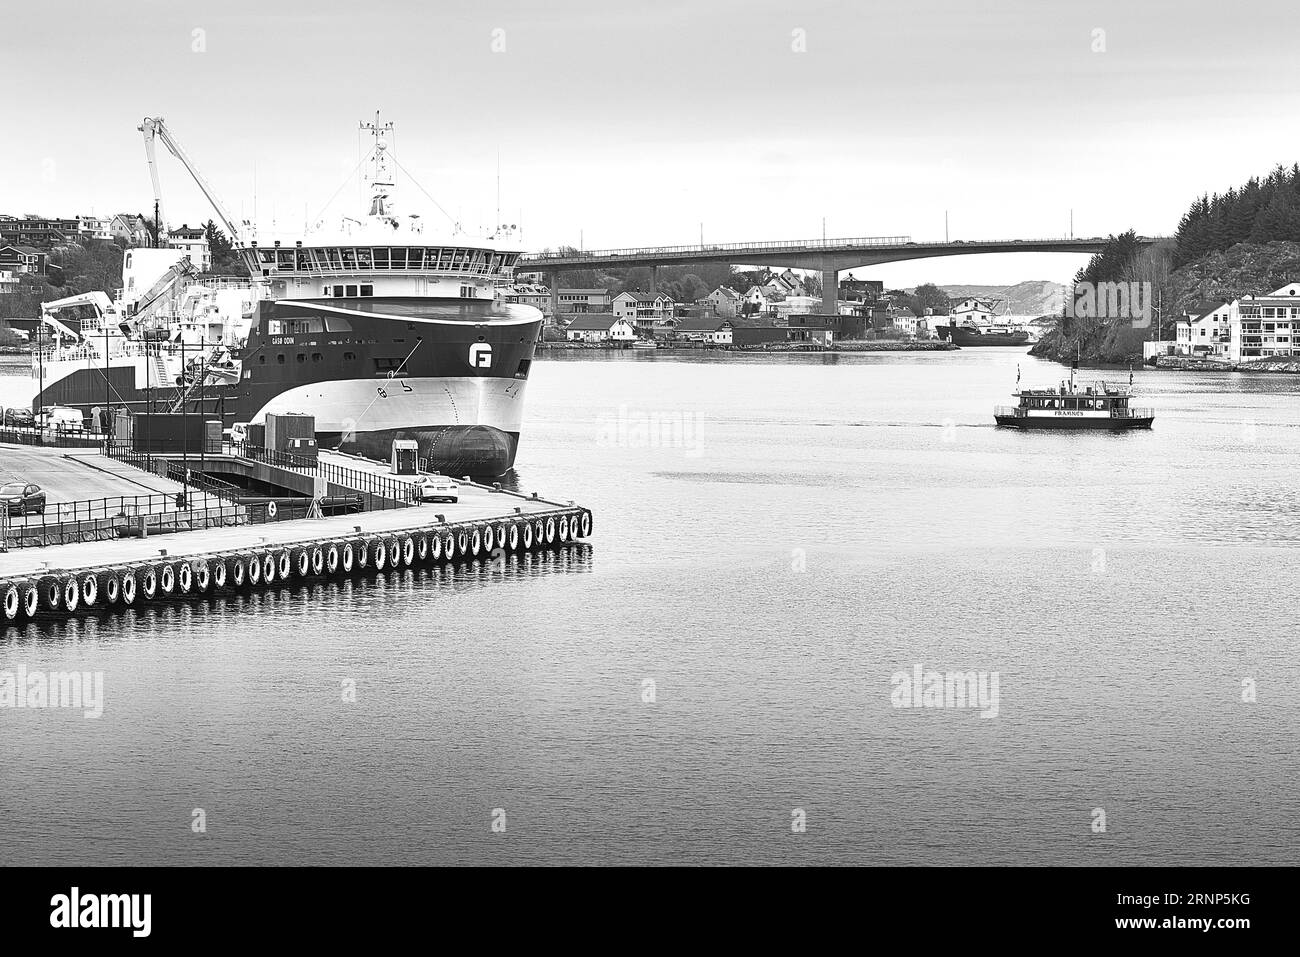 Photo en noir et blanc de la capacité de soute à cargaison GASO ODIN 4500 CBM, qui a à la fois des capacités de pêche et de manutention de poissons vivants. Kristiansund, Norvège Banque D'Images